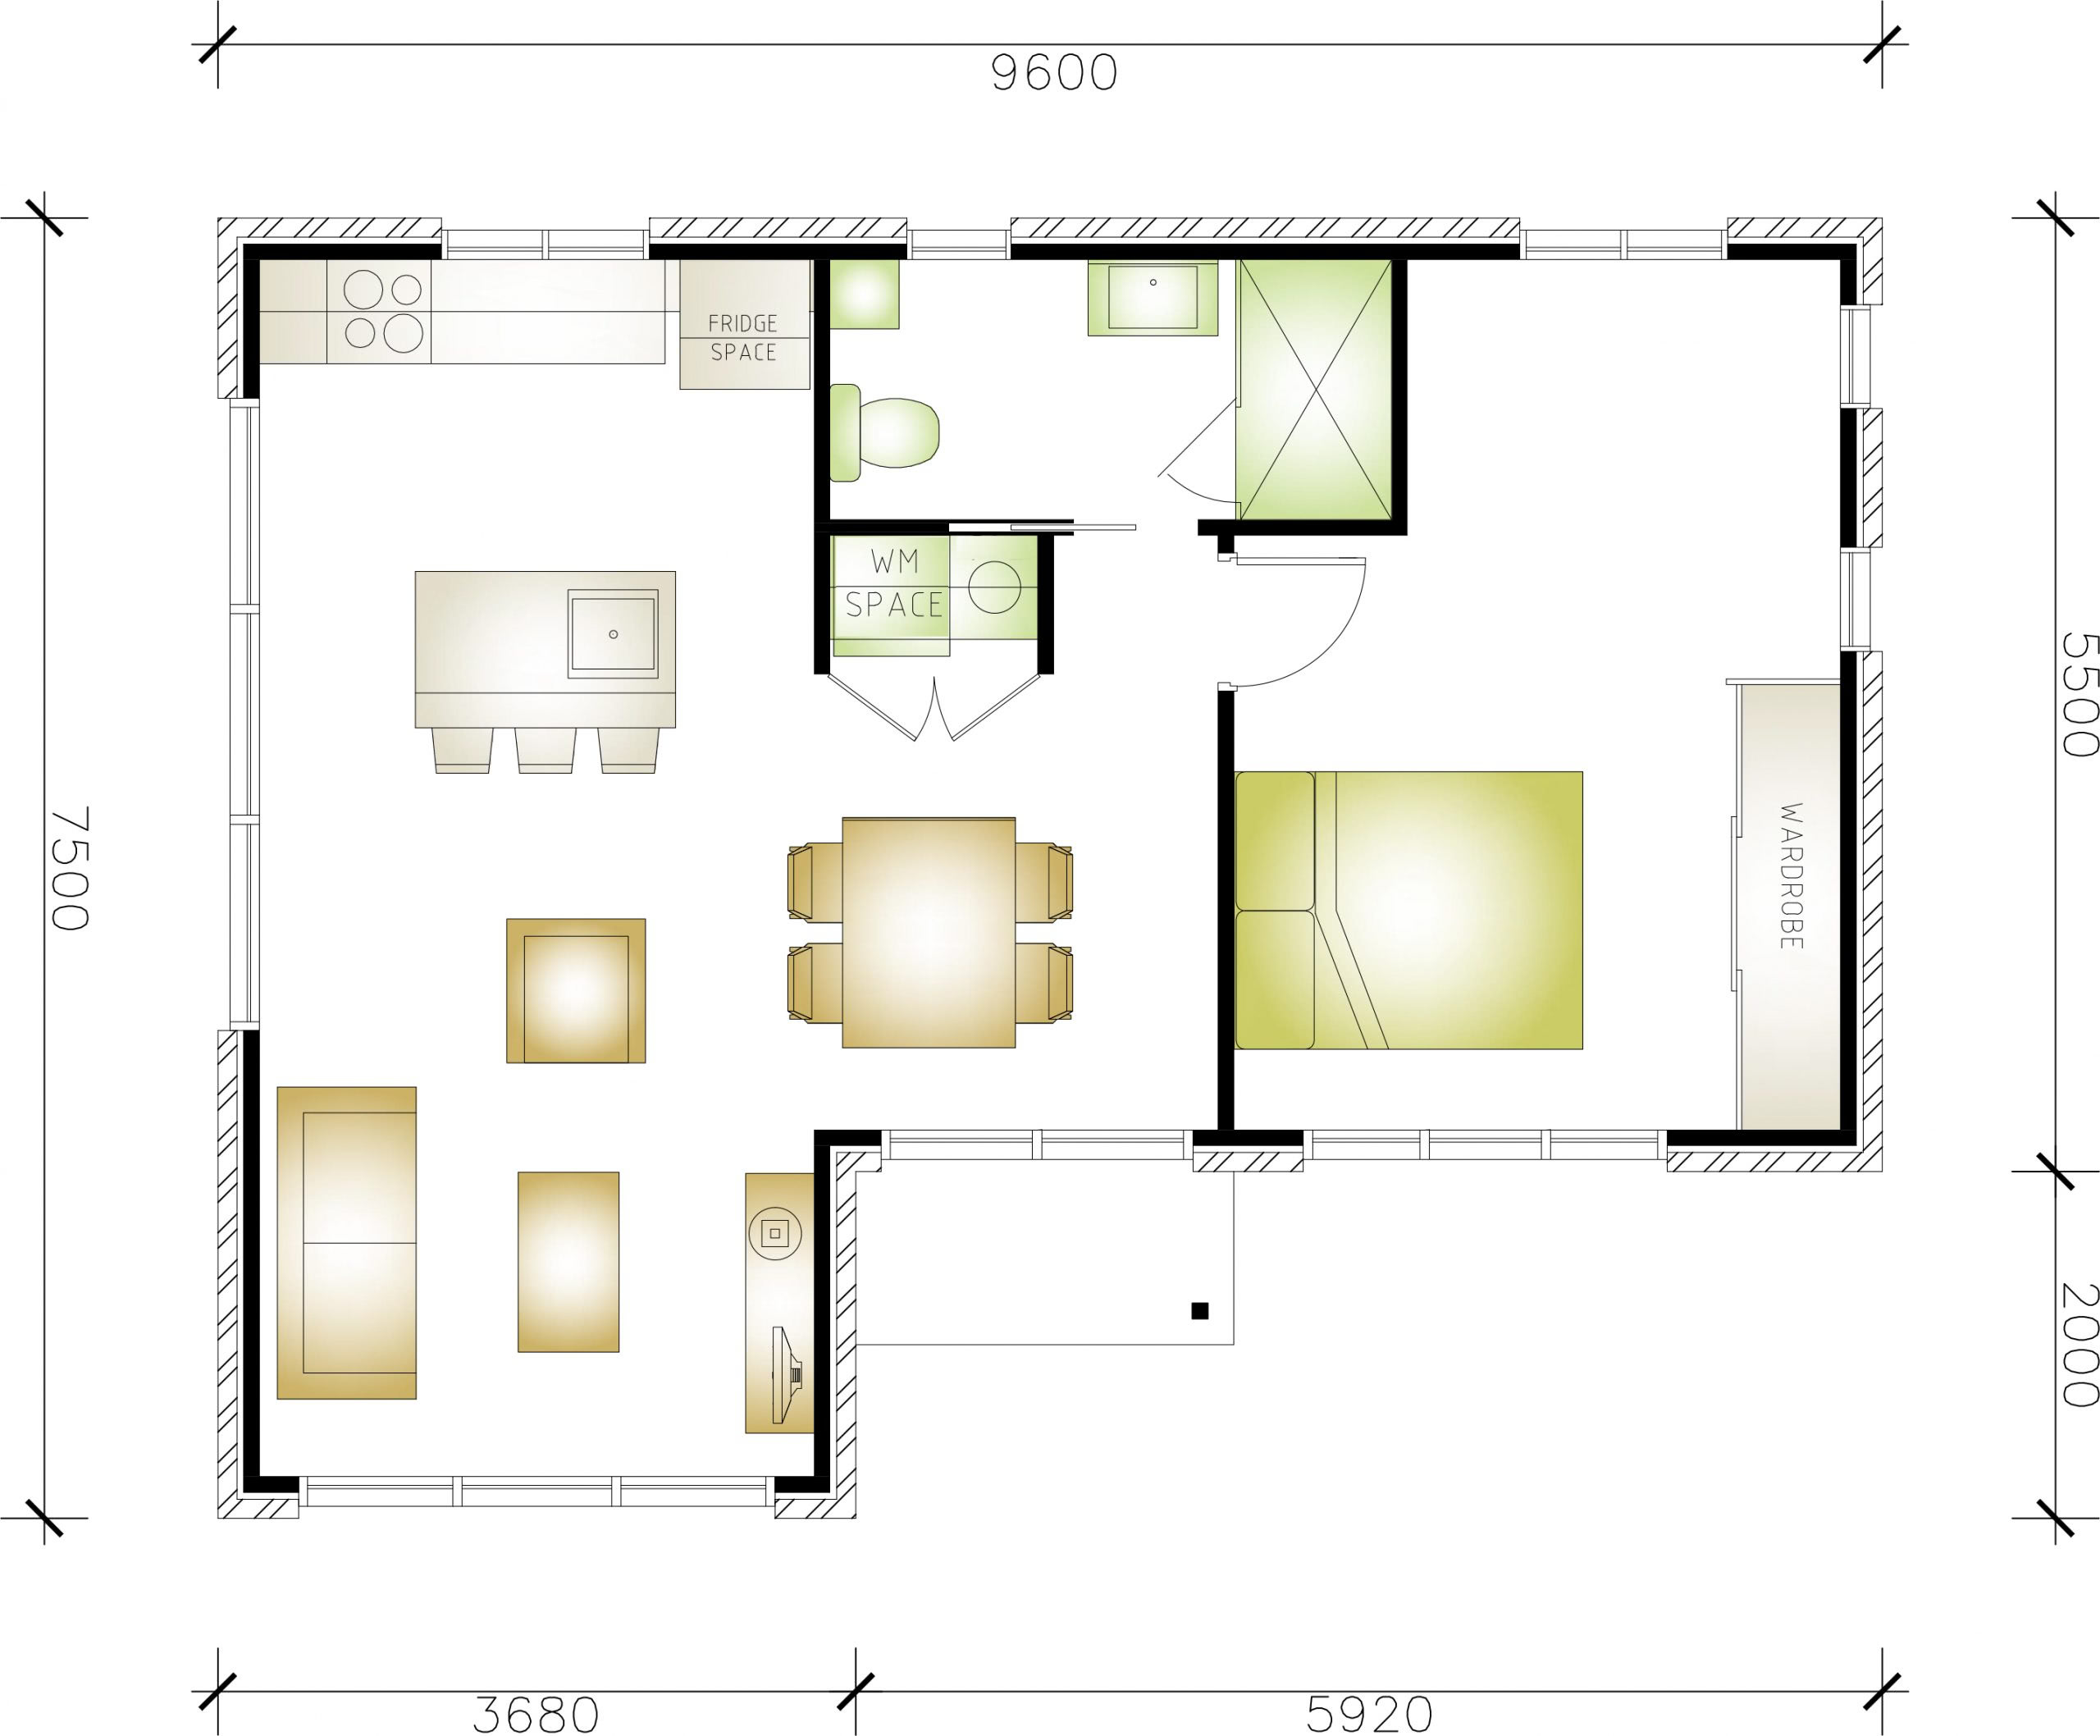 Granny flat floor plan with 1 bedroom